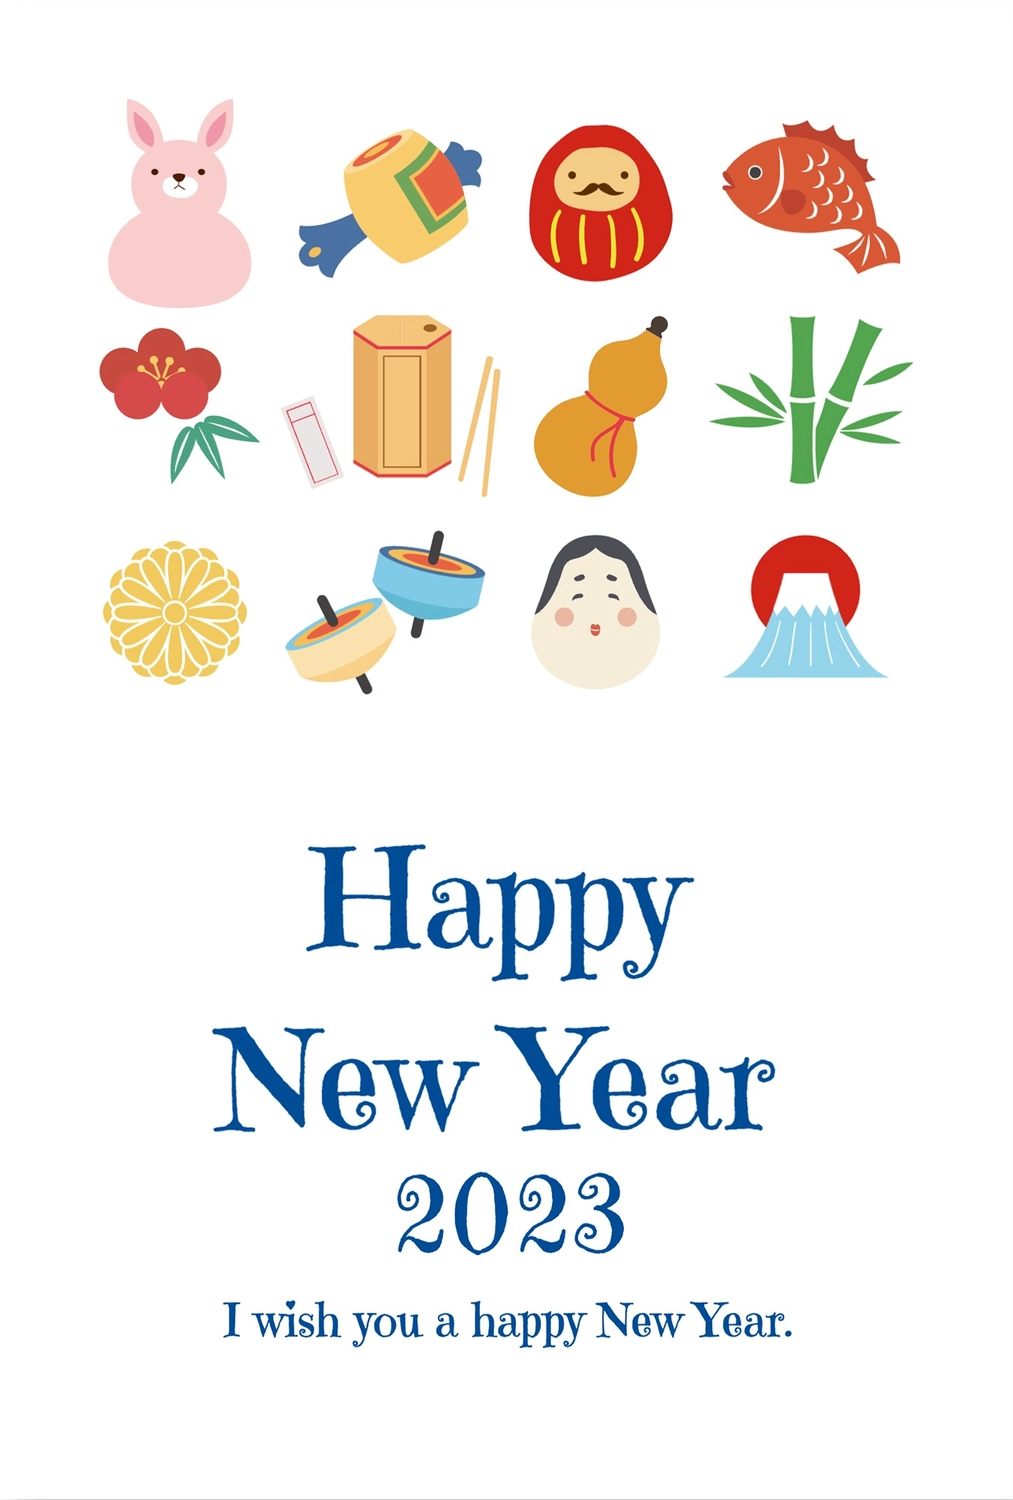 青文字の正月イラスト年賀状, New Year's games, NEW YEAR, animal, New Year Card template